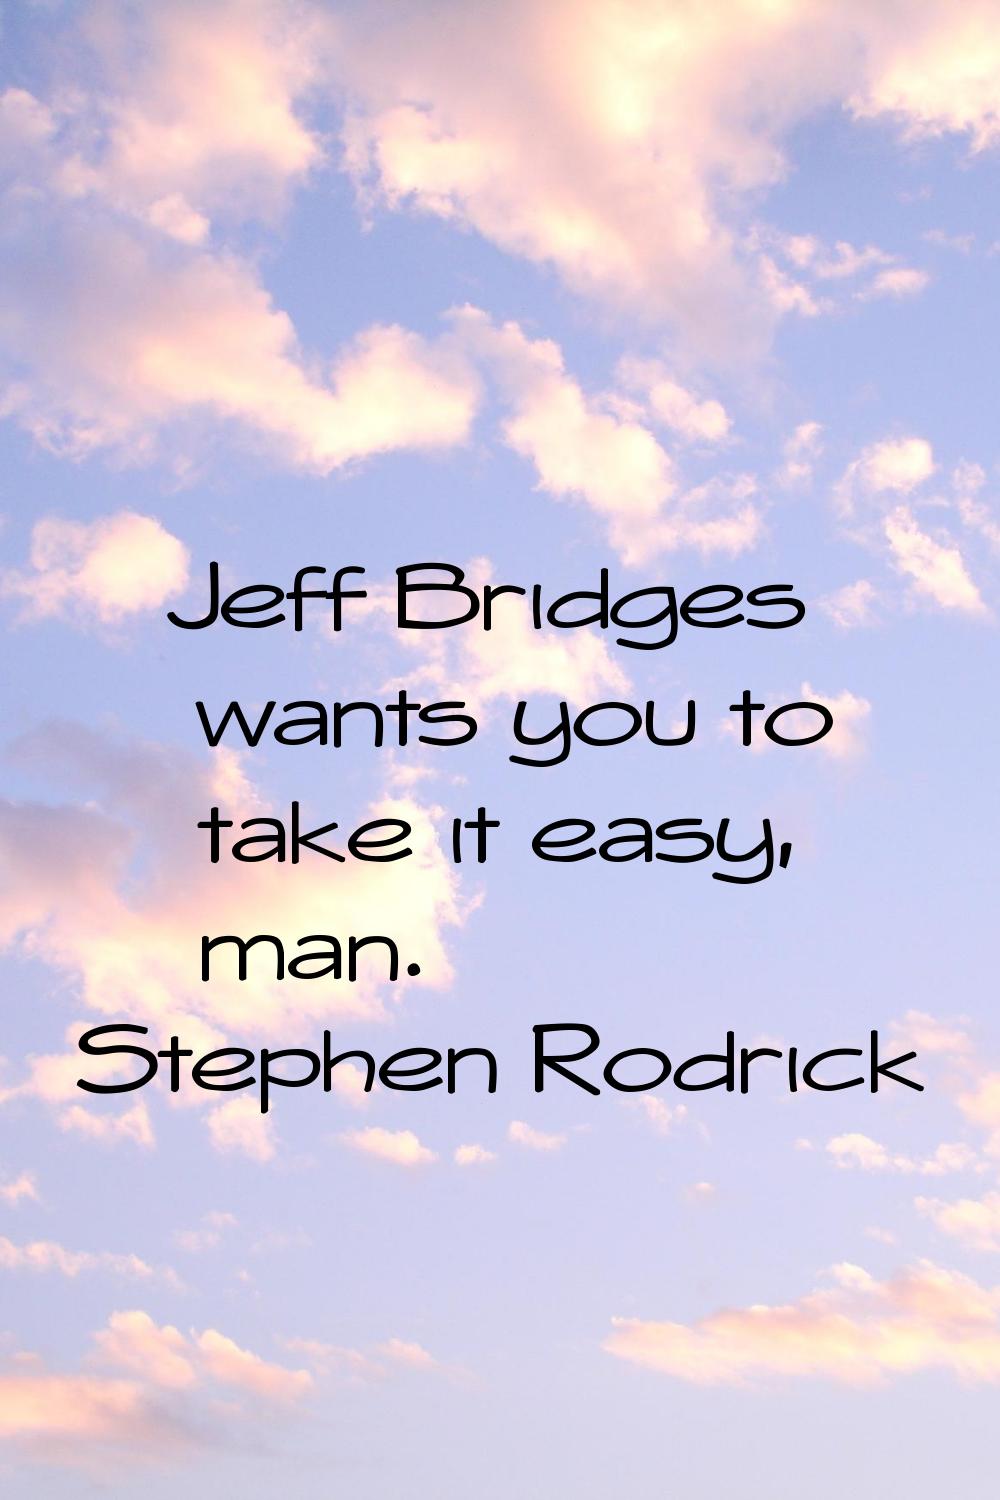 Jeff Bridges wants you to take it easy, man.